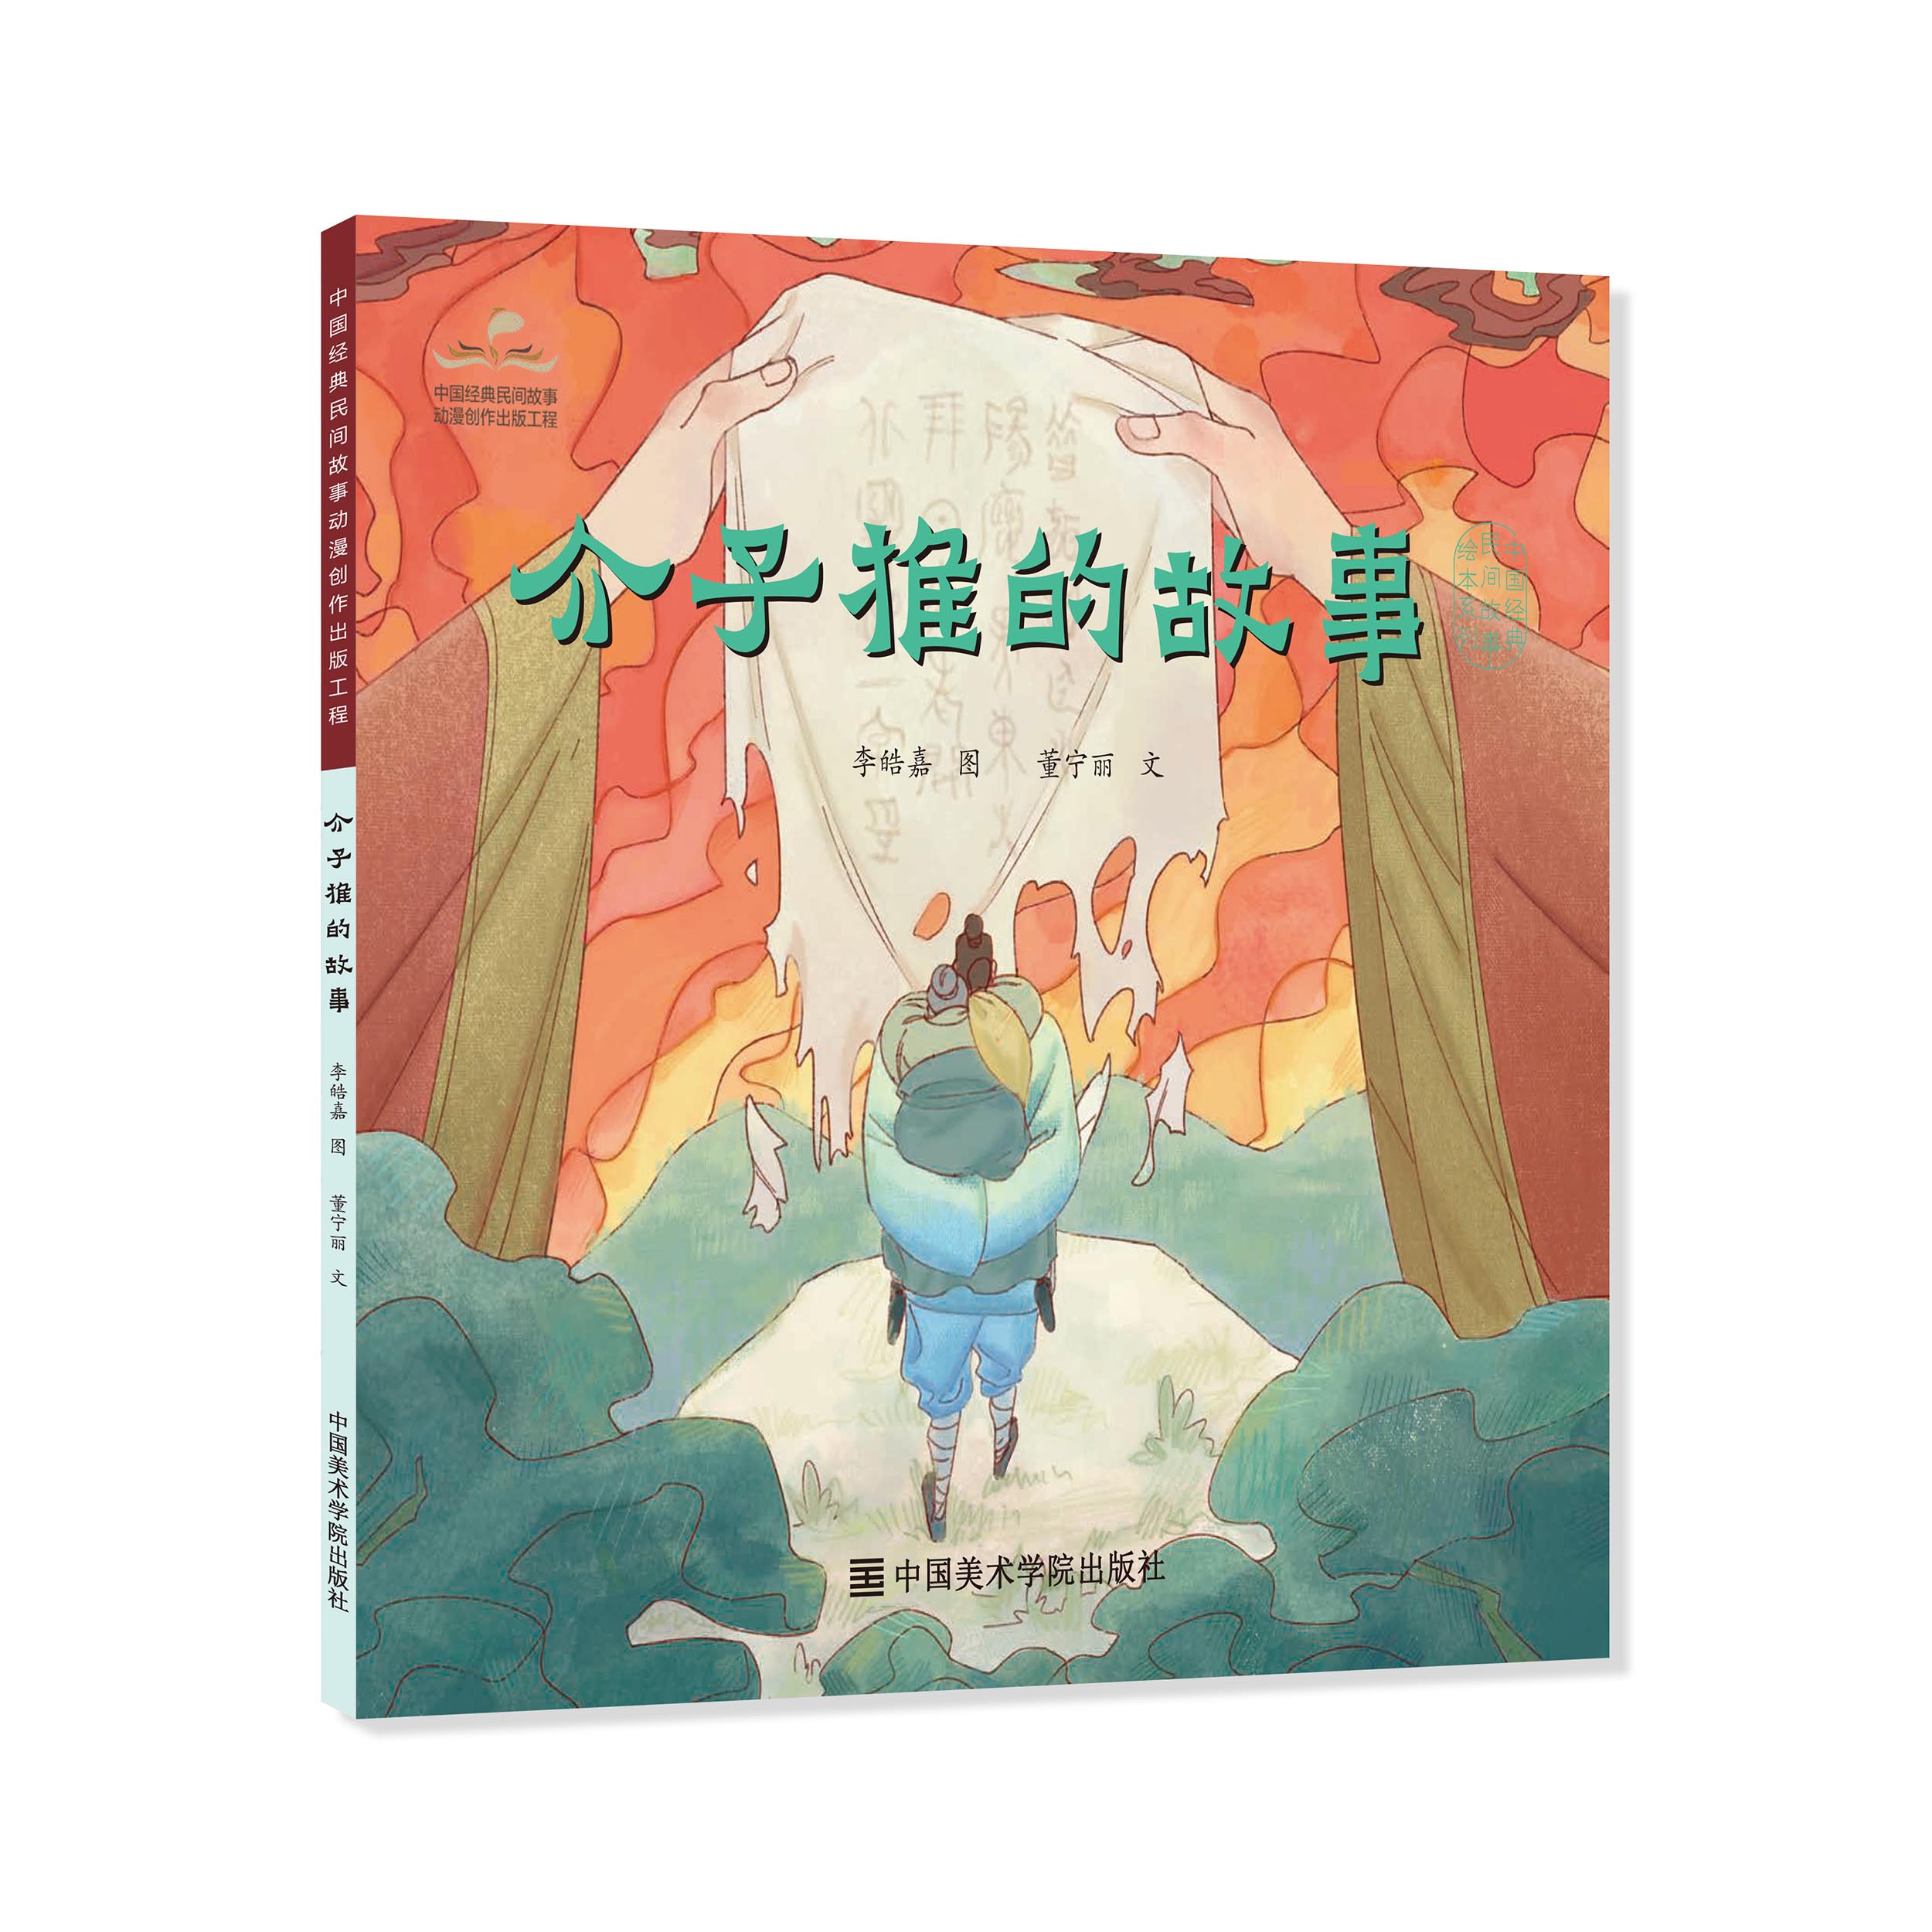 《介子推的故事》定价:19.8 中国经典民间故事绘本 中国美术学院 正版品牌直销 满58包邮